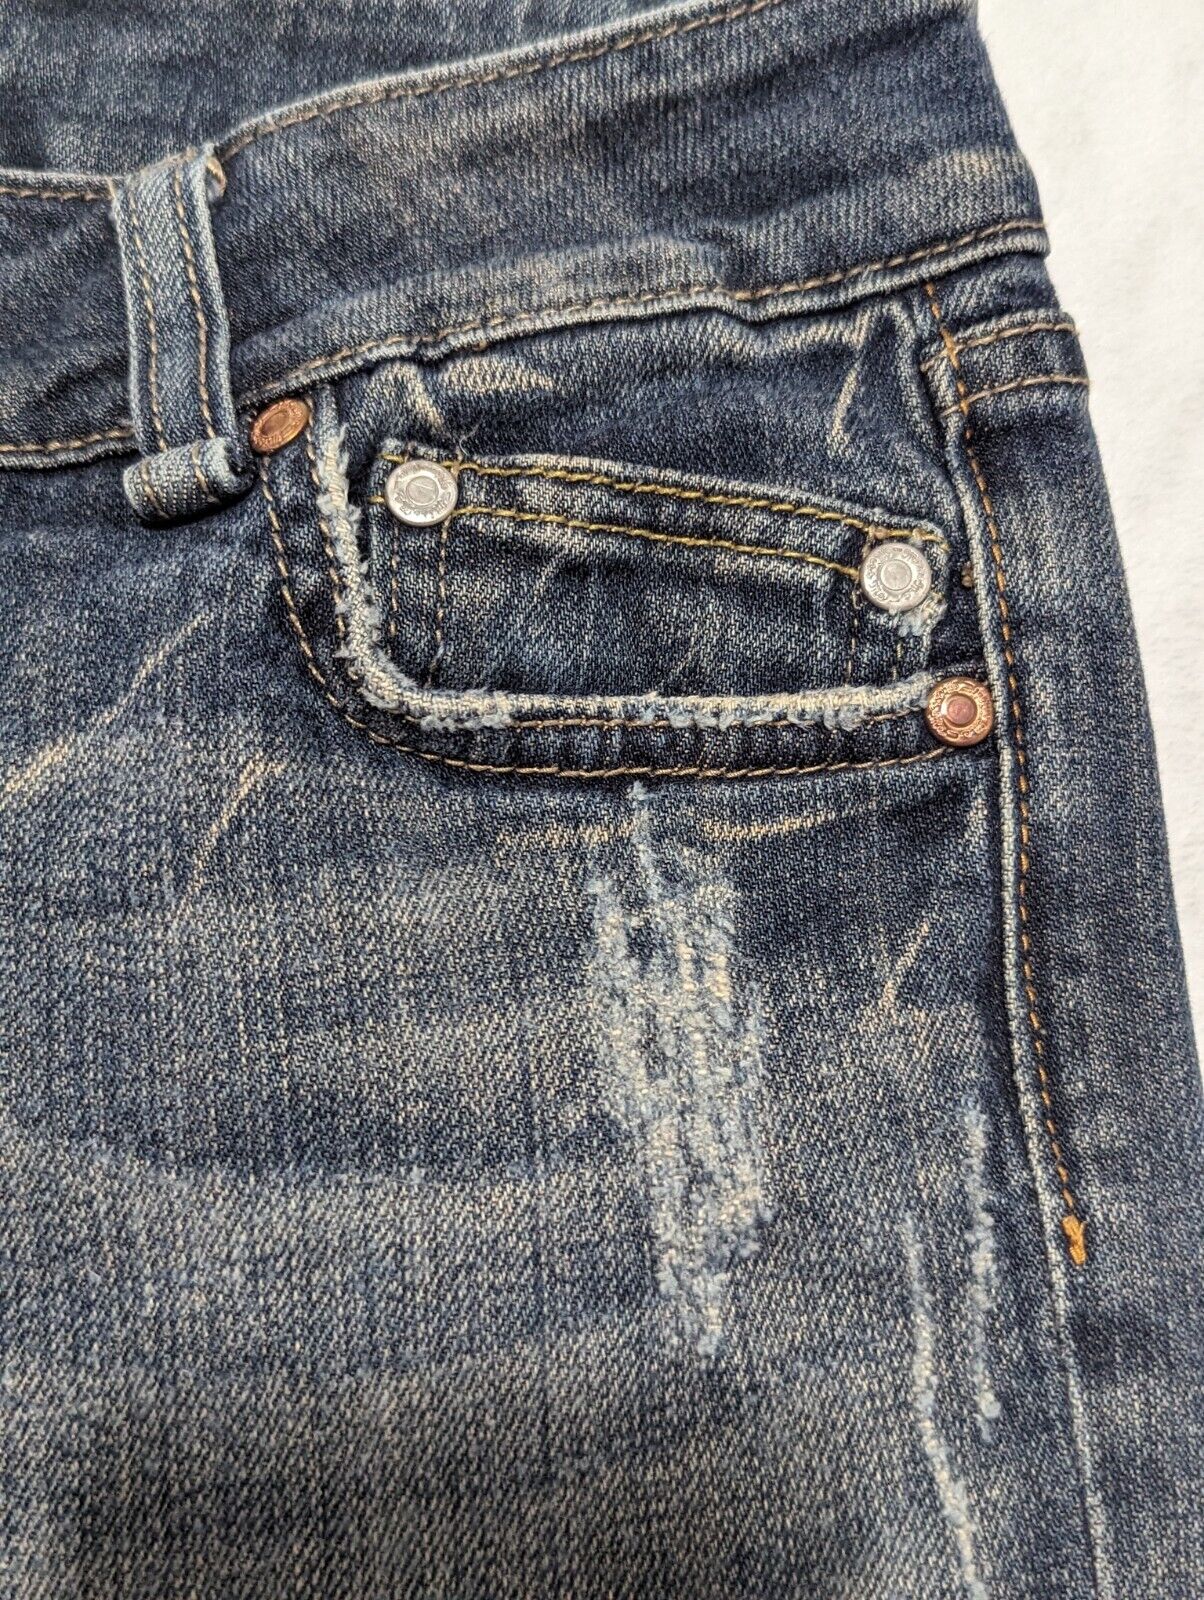 Miss Me Bootcut Blue Jeans Sz 26 Medium Wash Stre… - image 10